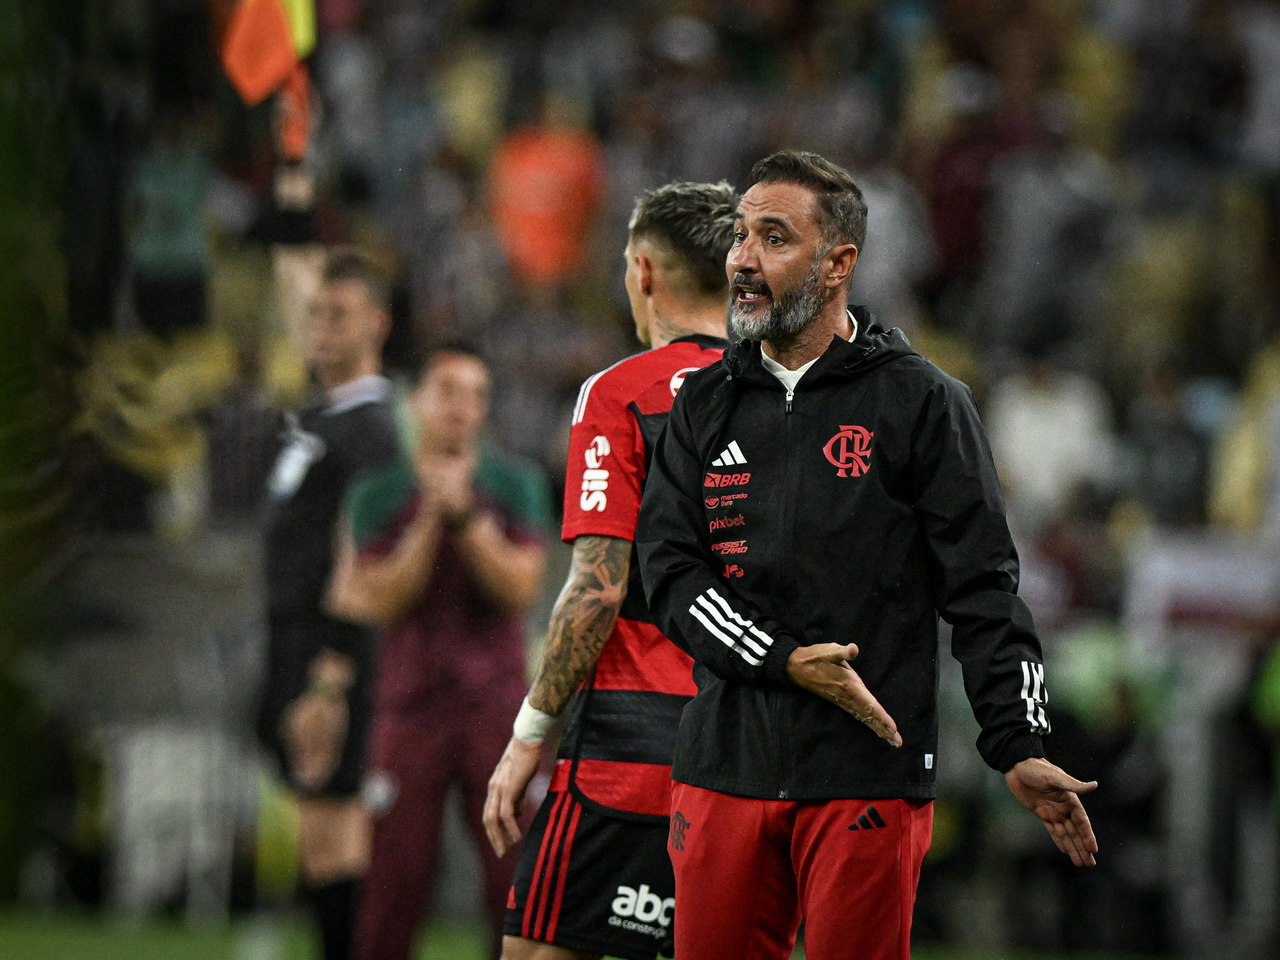 Róger Guedes é excluído da seleção do Campeonato Paulista 2023